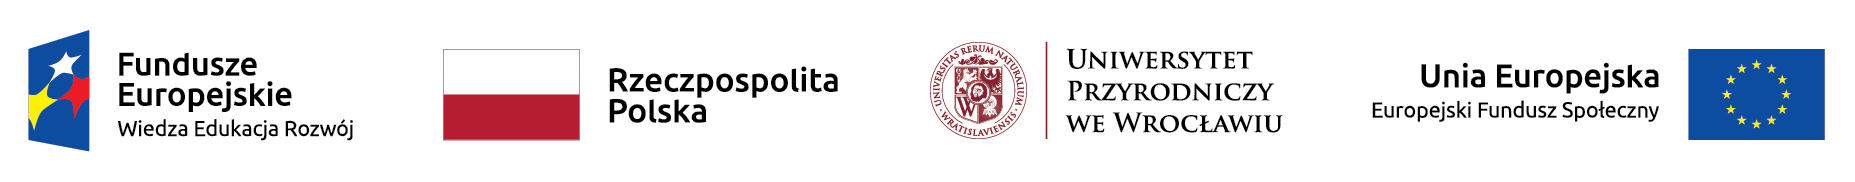 Logotypy projektowe - logotyp Funduszy Europejskich, flaga Rzeczpospolitej Polskiej, logotyp Uniwersytetu Przyrodniczego we Wrocławiu, Logotyp Uni Europejskiej